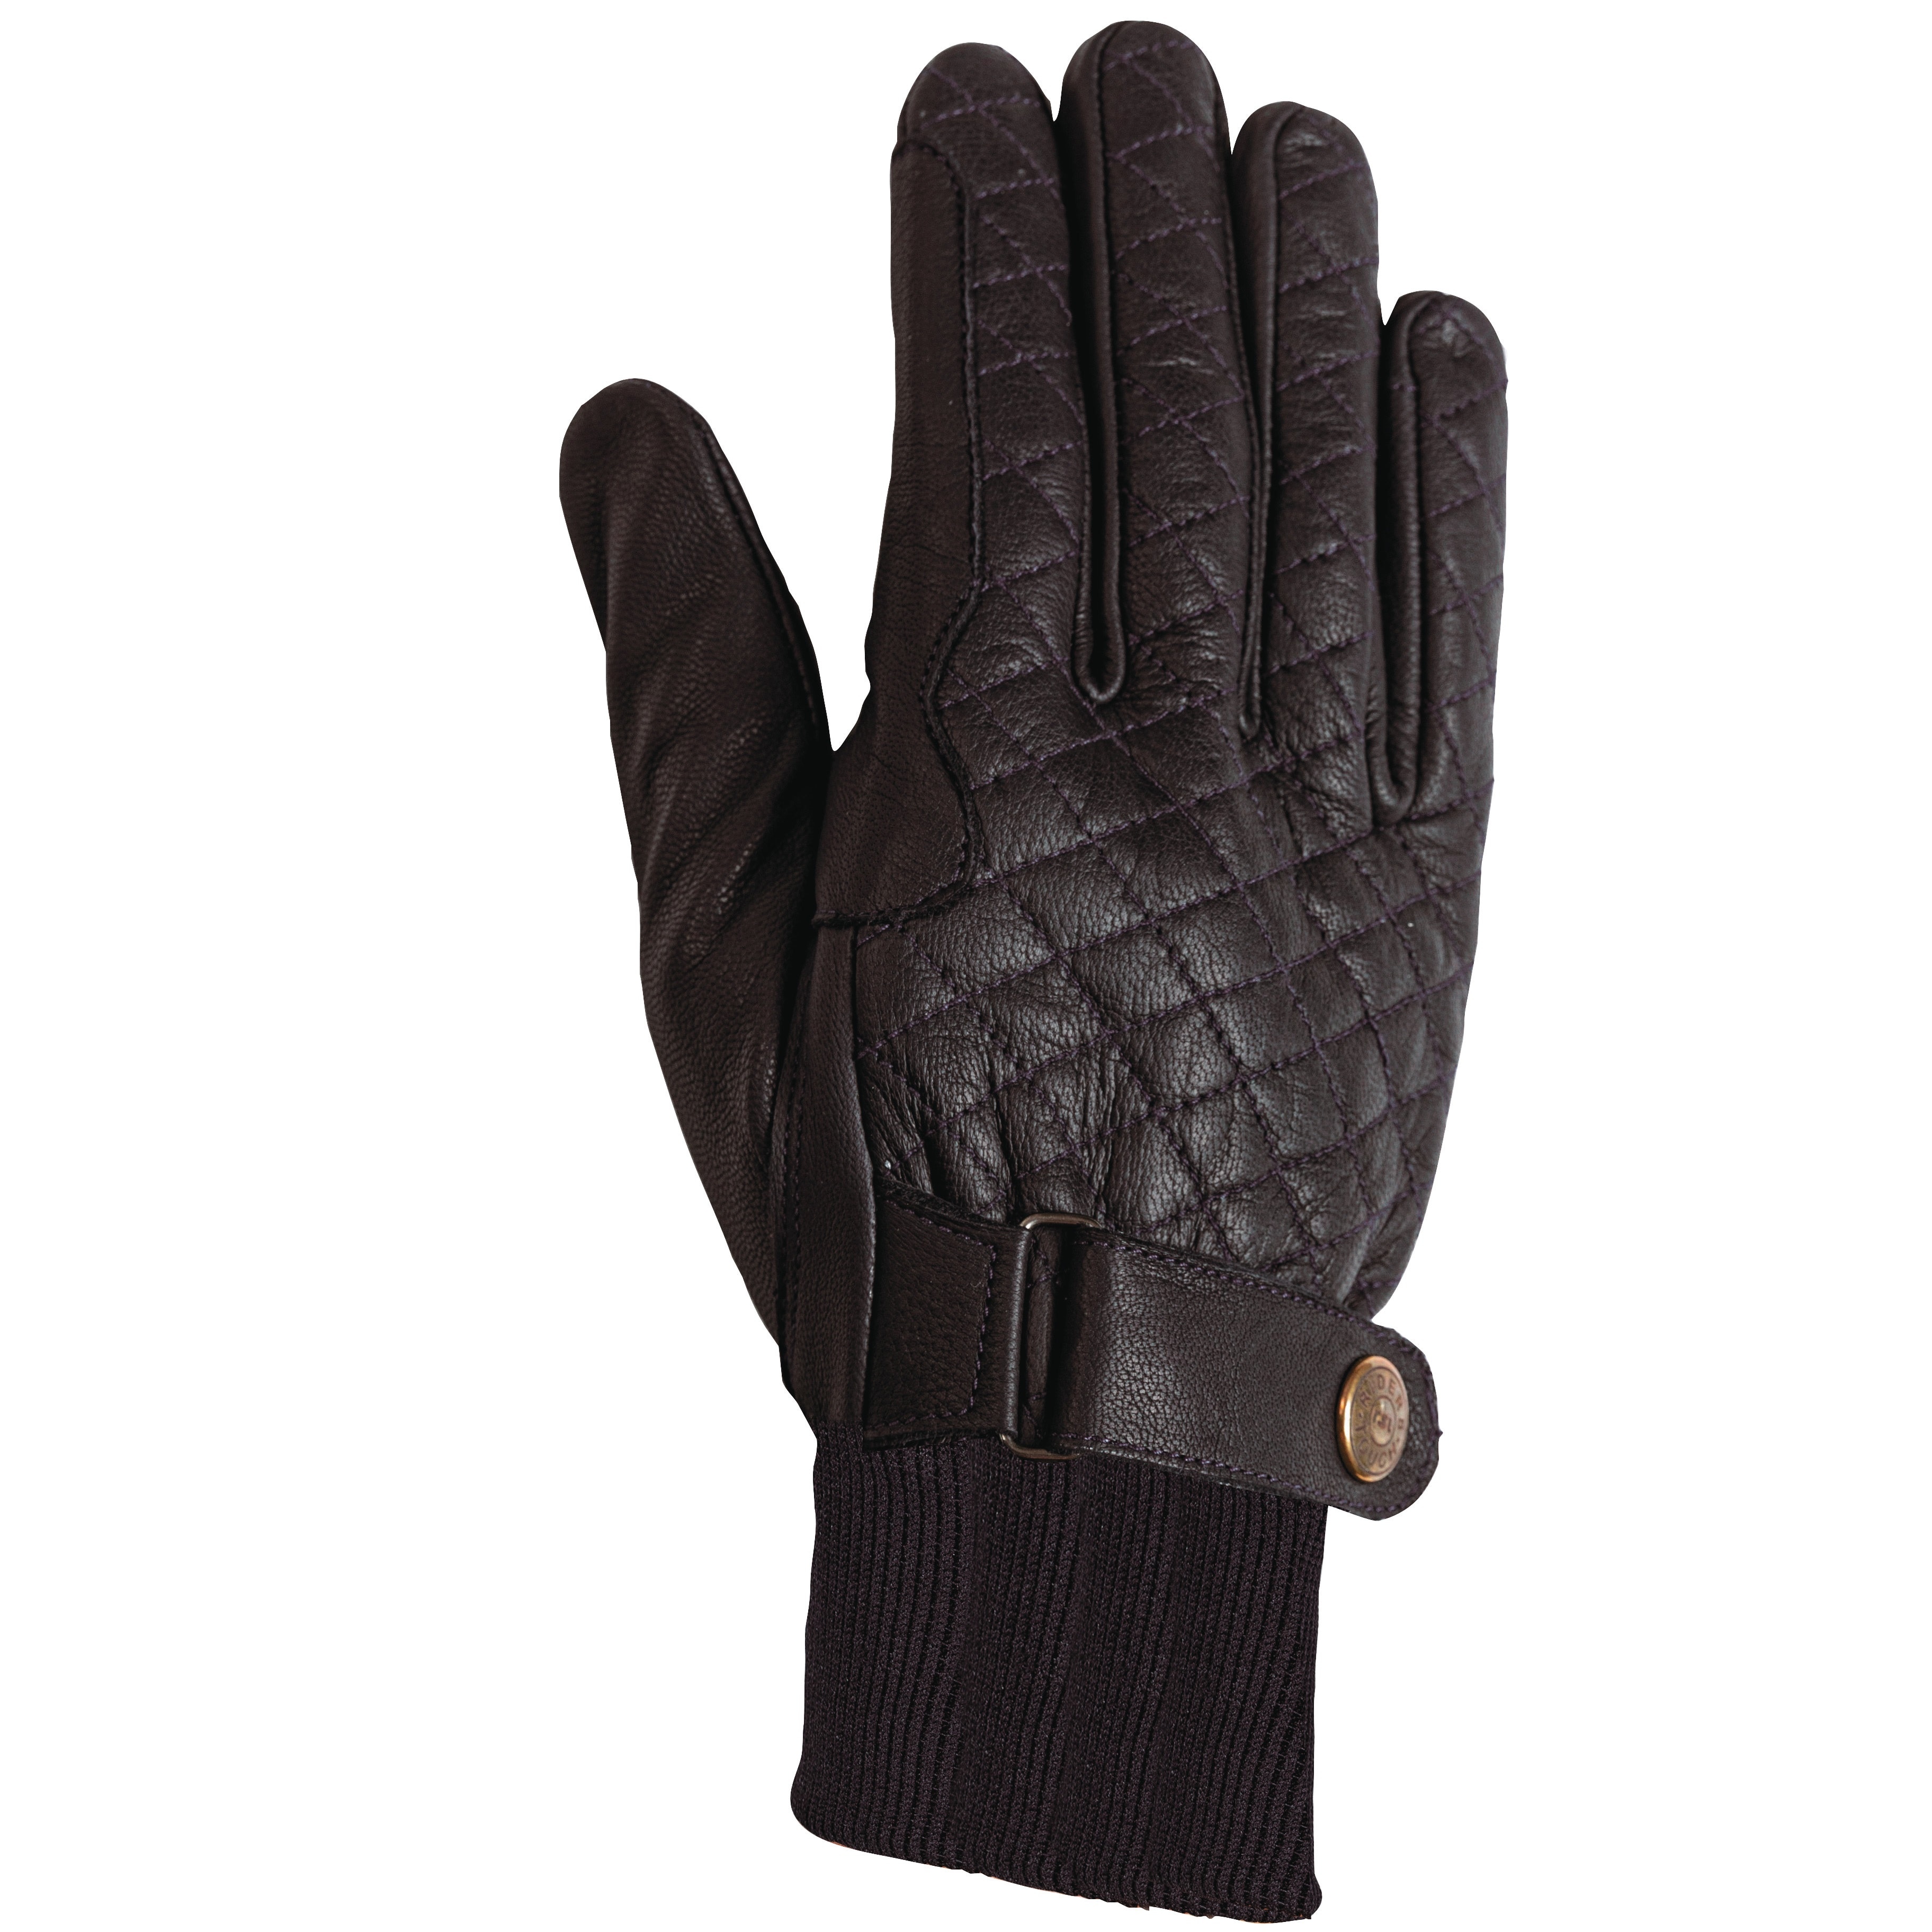 Kitzbühel Winter riding gloves - Black